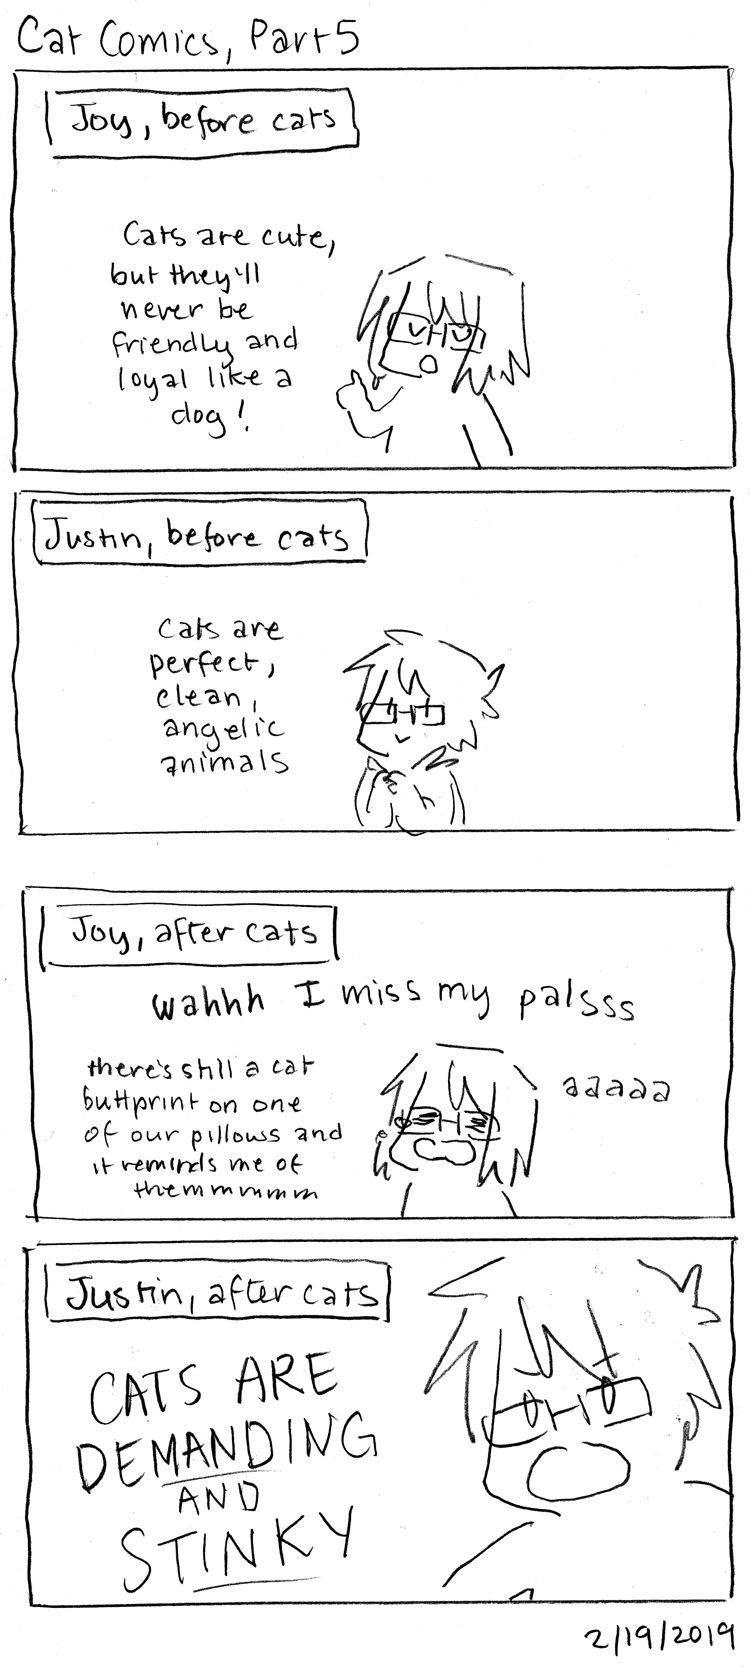 Cat Comics, Part 5